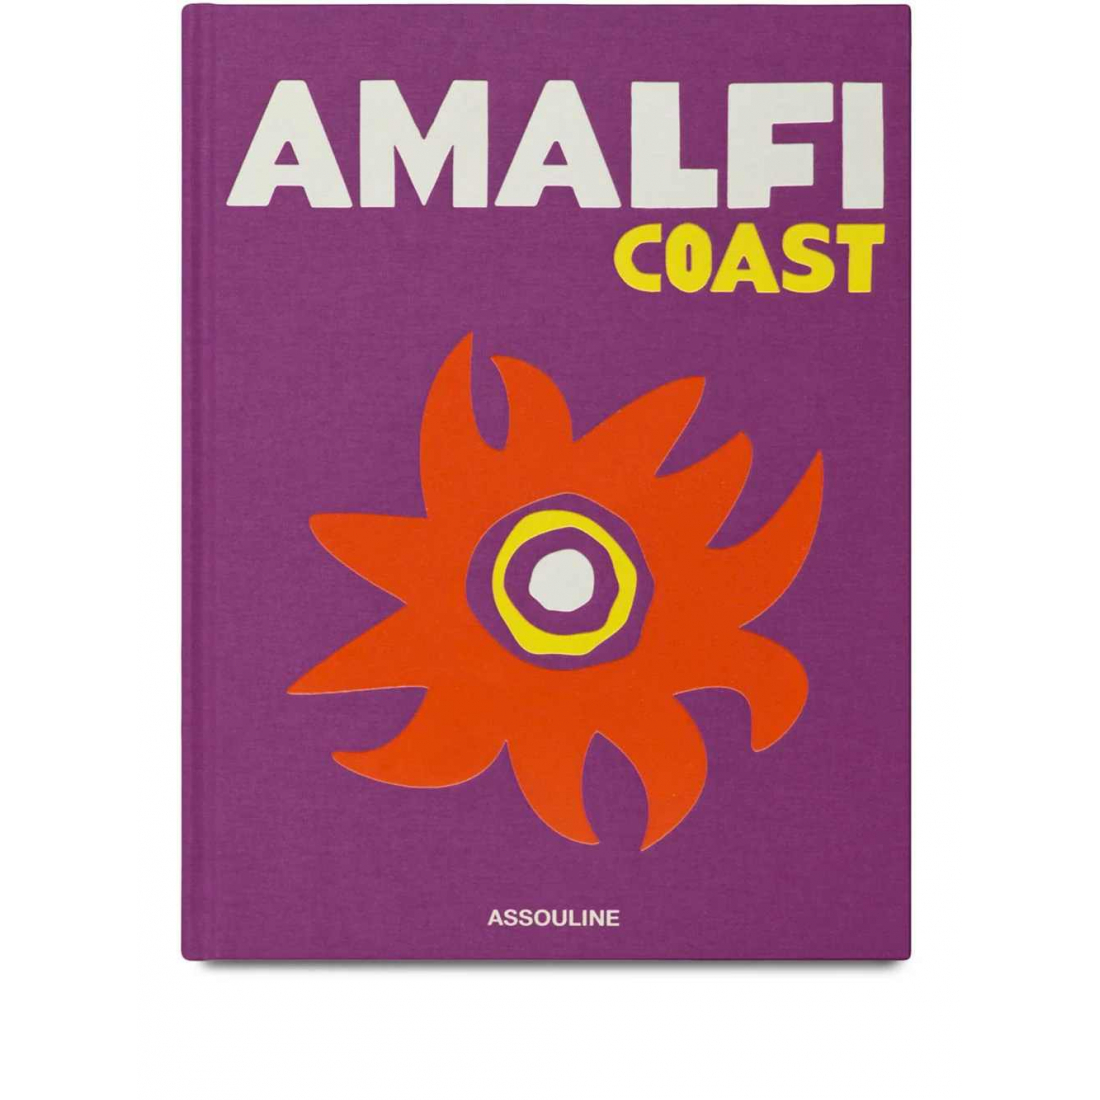 'Amalfi Coast' Buch